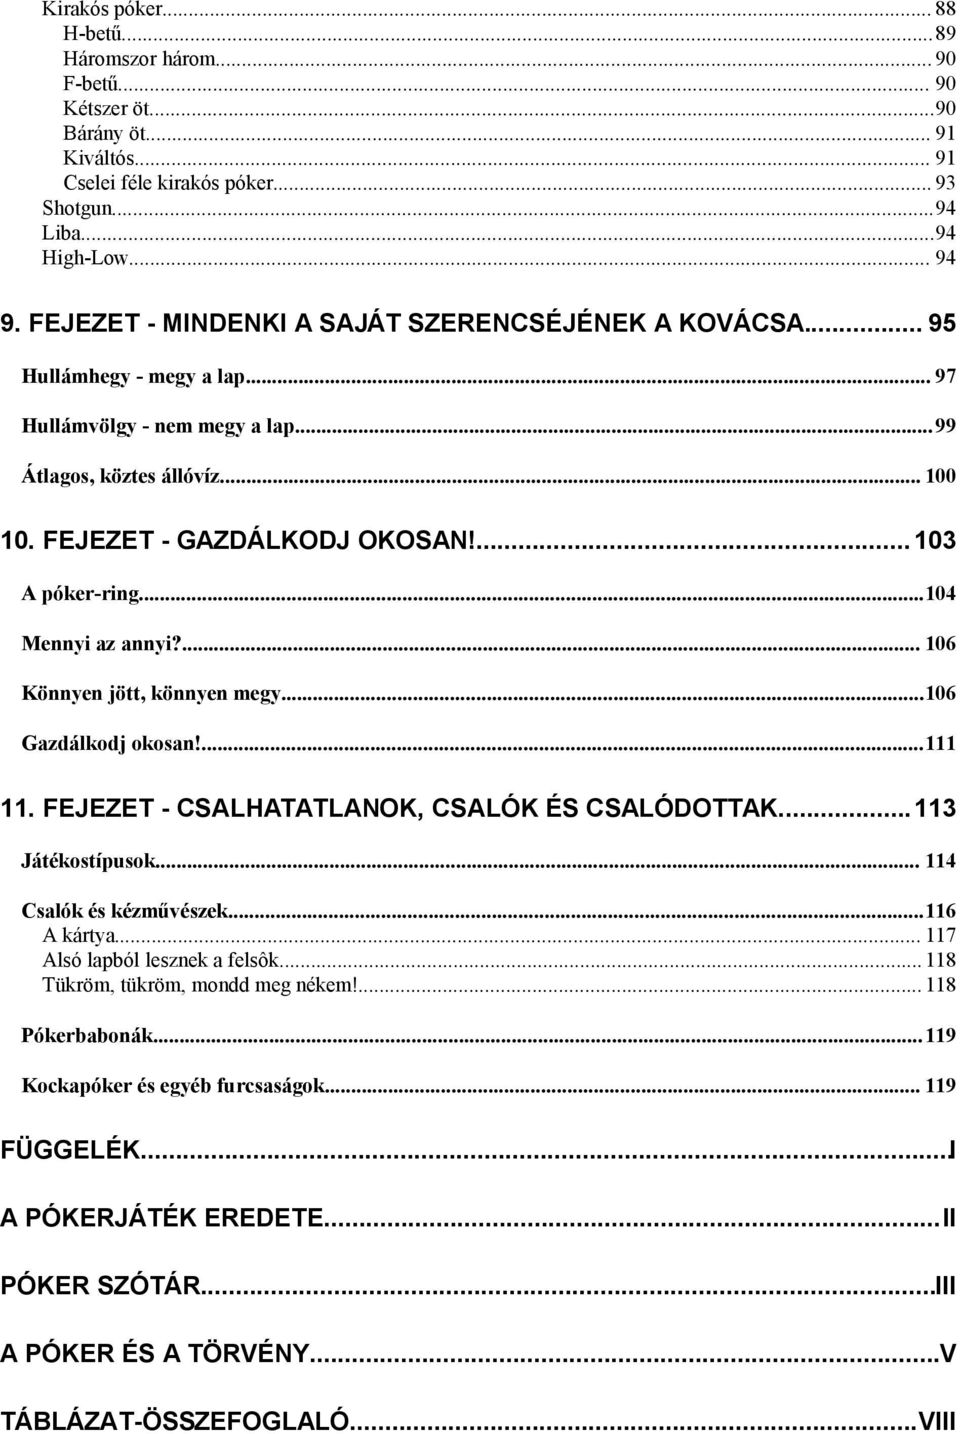 SZURDI ANDRÁS PÓKERKÖNYV KEZDÔKNEK ÉS HALADÓKNAK. Szurdi András, kiadta:  Falukönyv-Ciceró - PDF Ingyenes letöltés